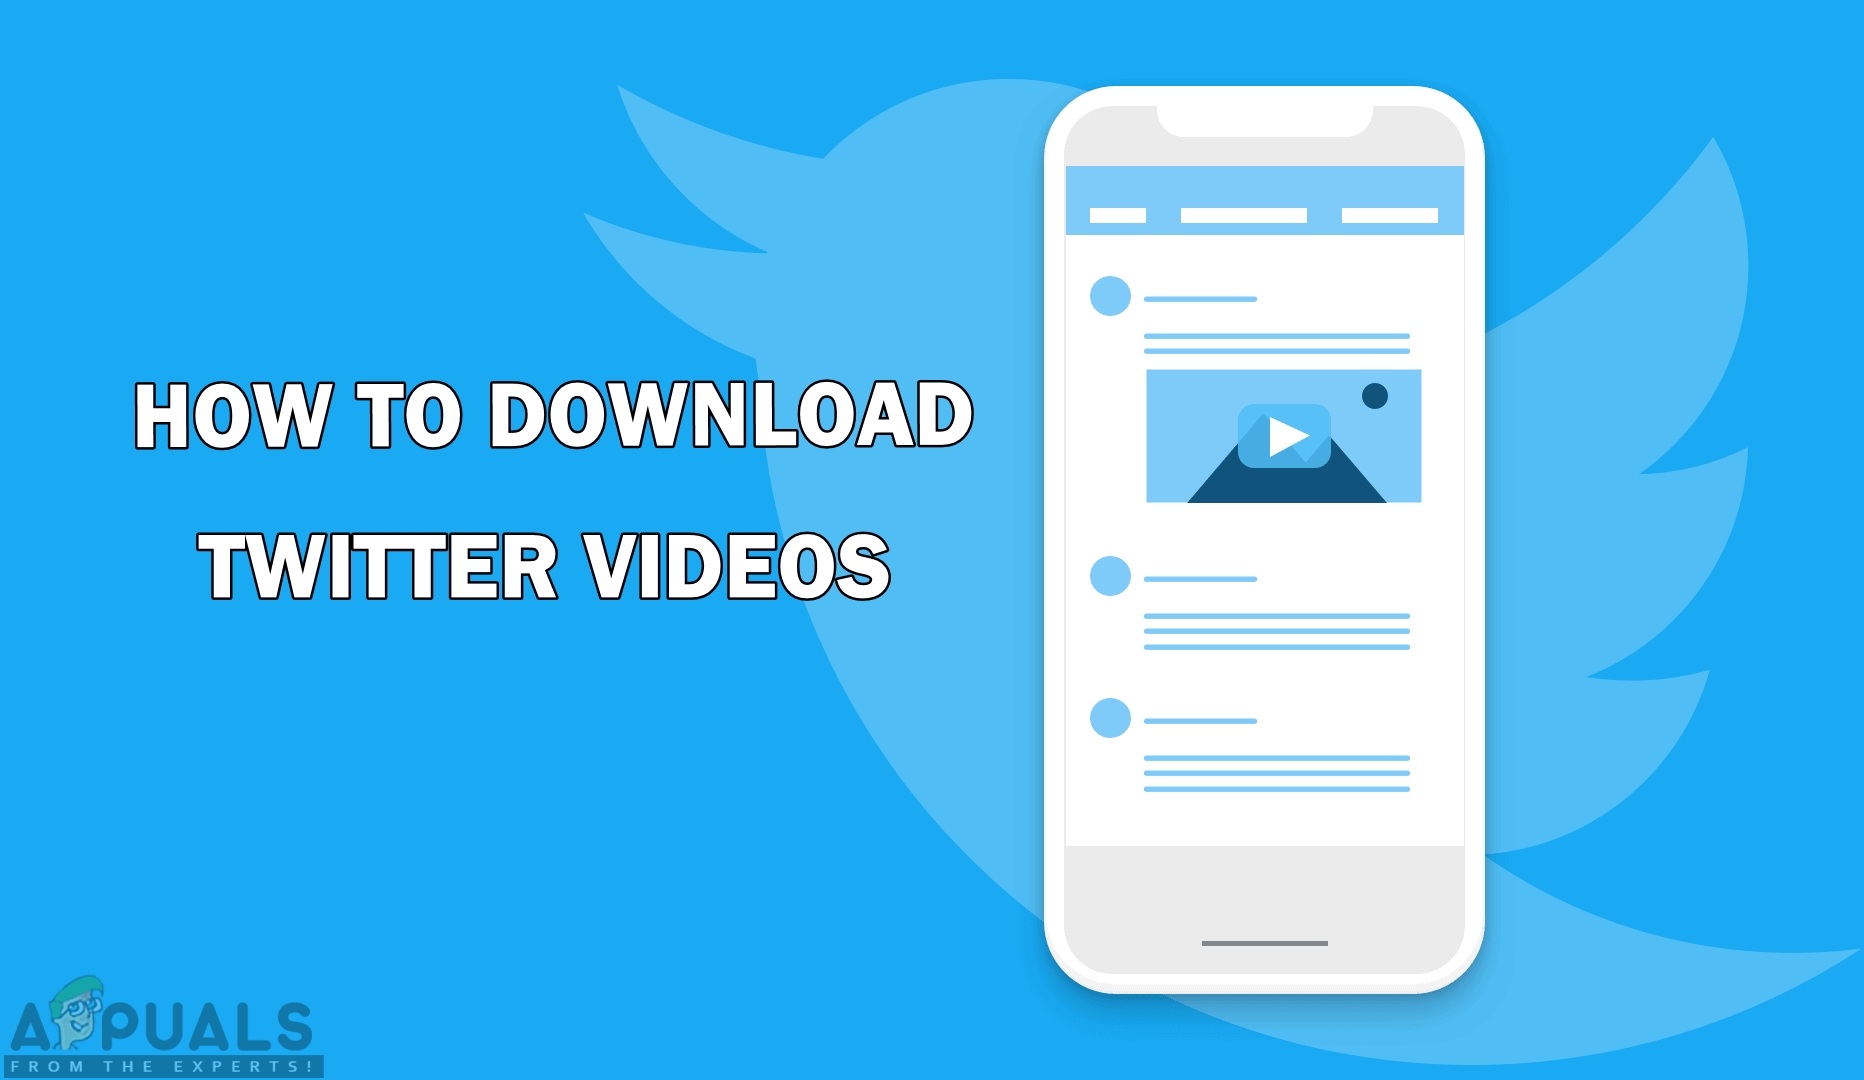 Hogyan lehet letölteni a Twitter videókat?